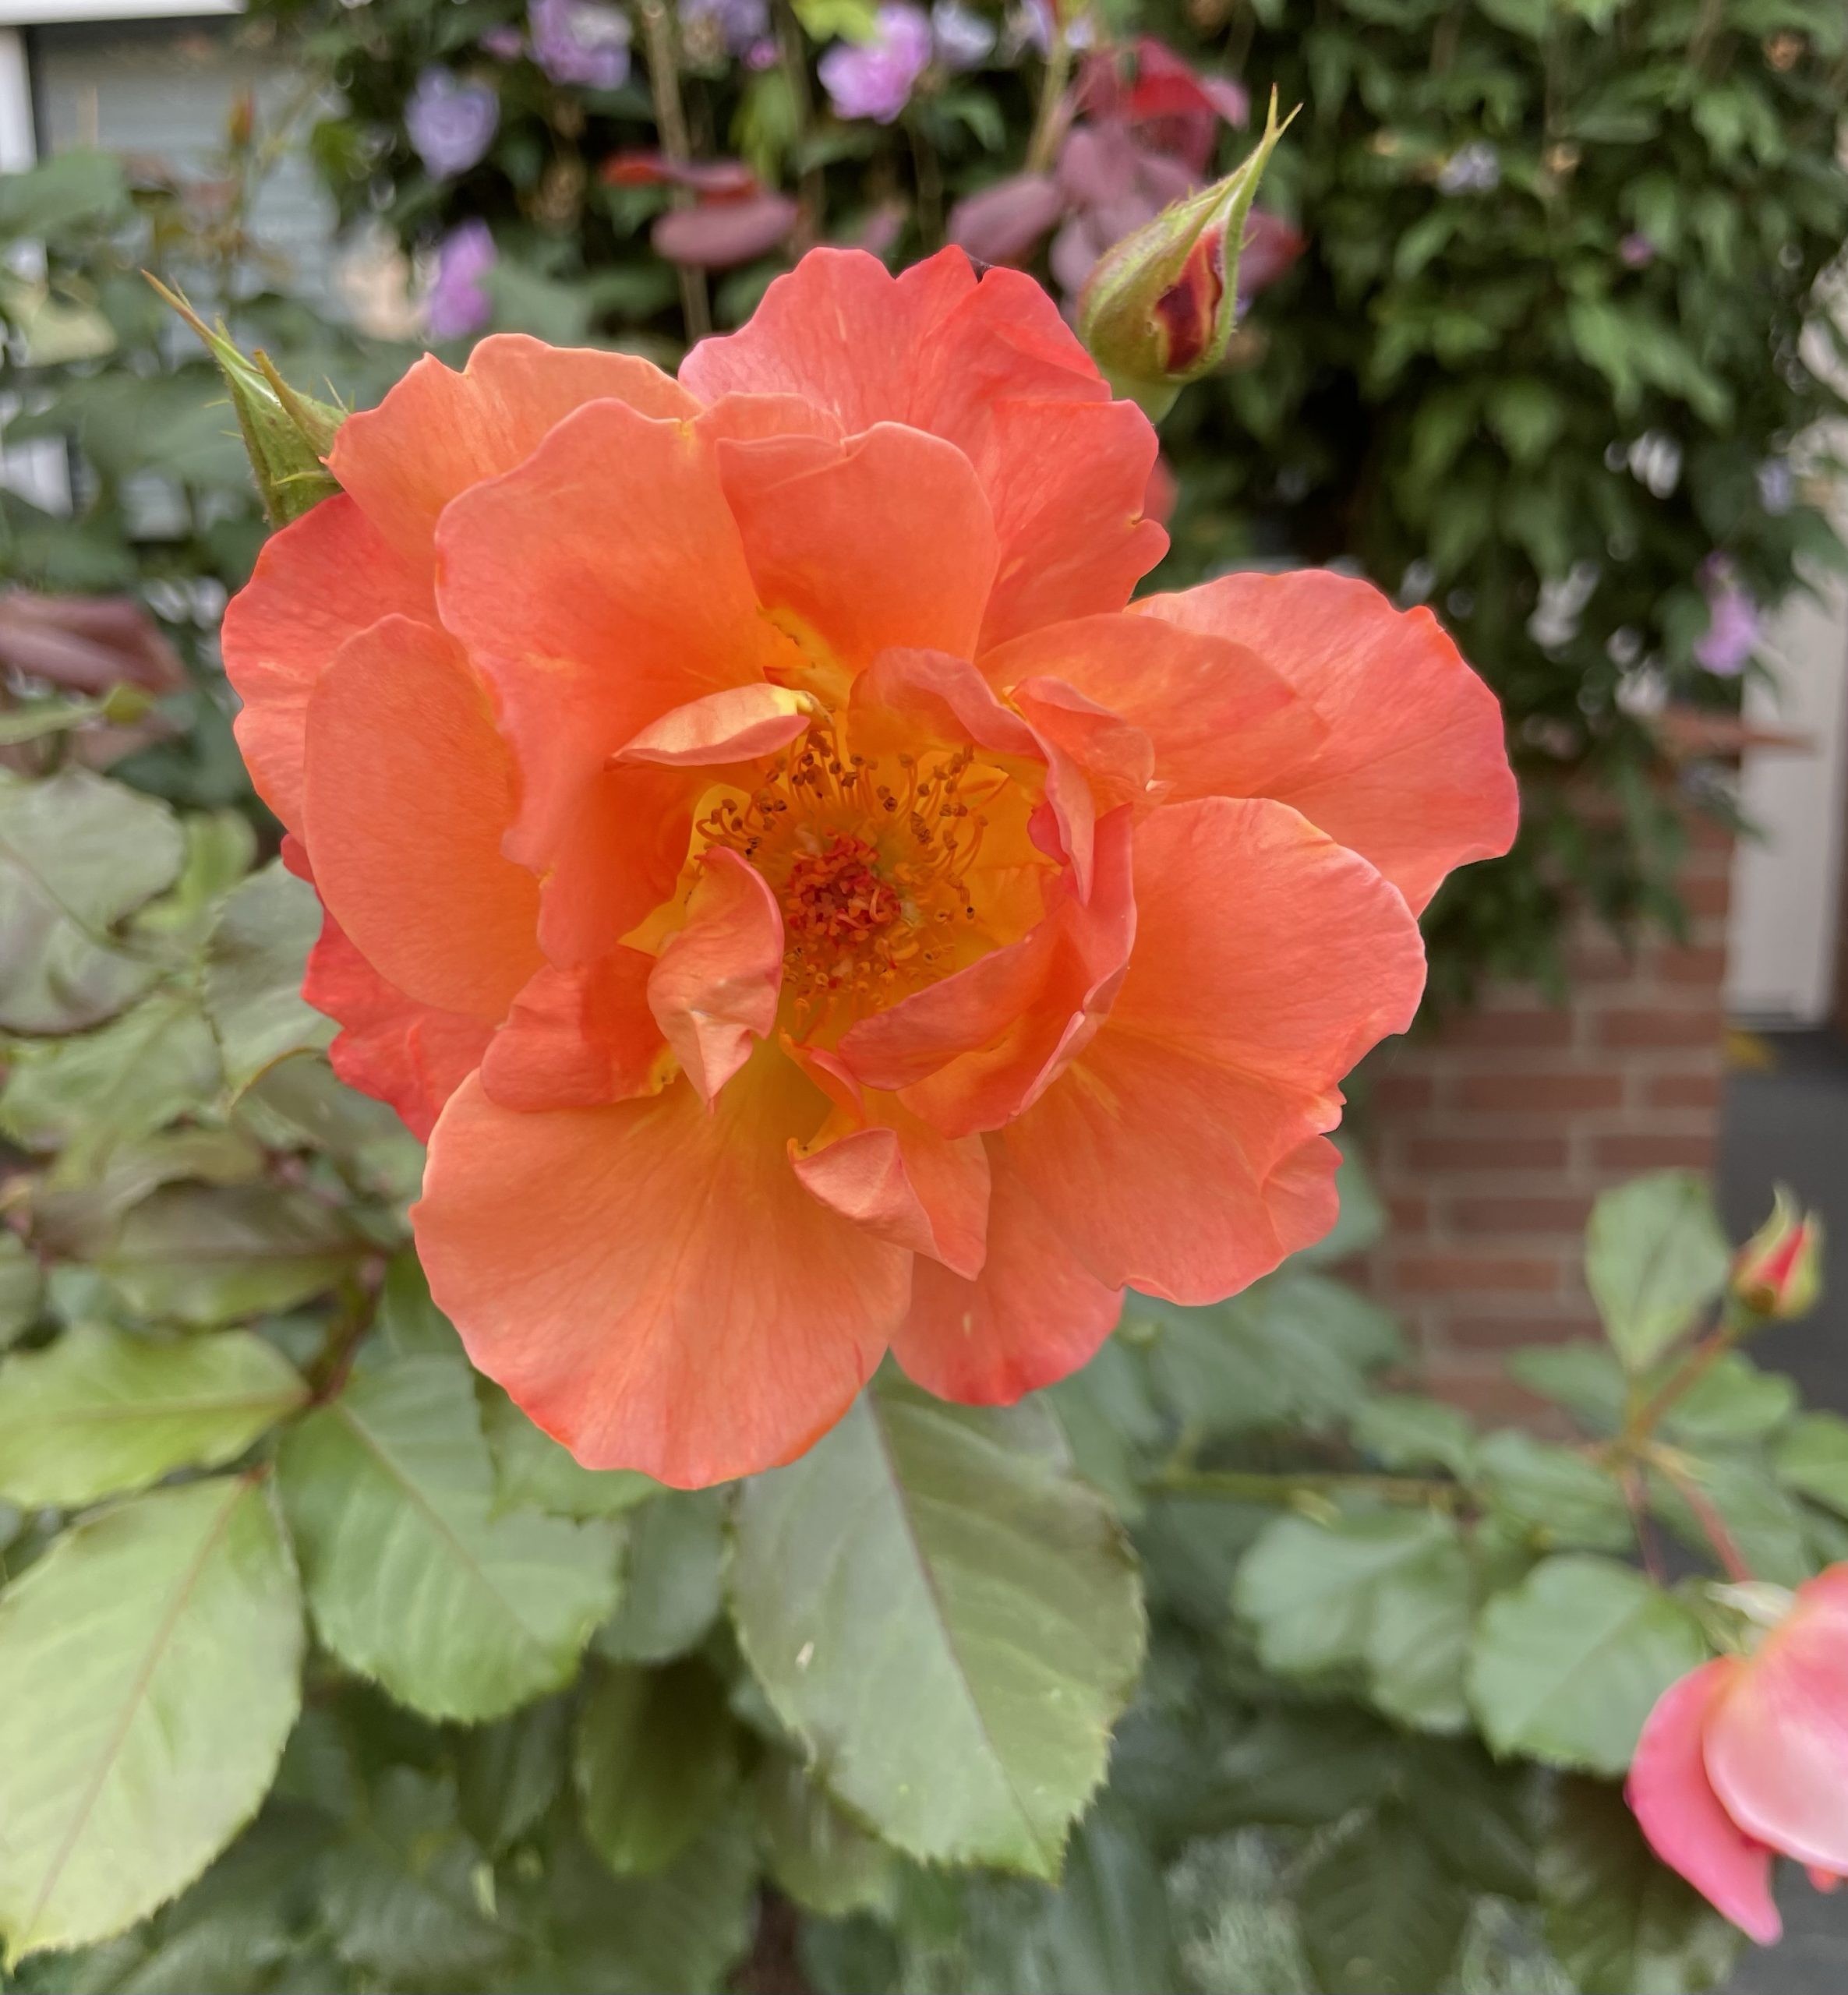 Orangene Rosenblüte im Vorgarten.